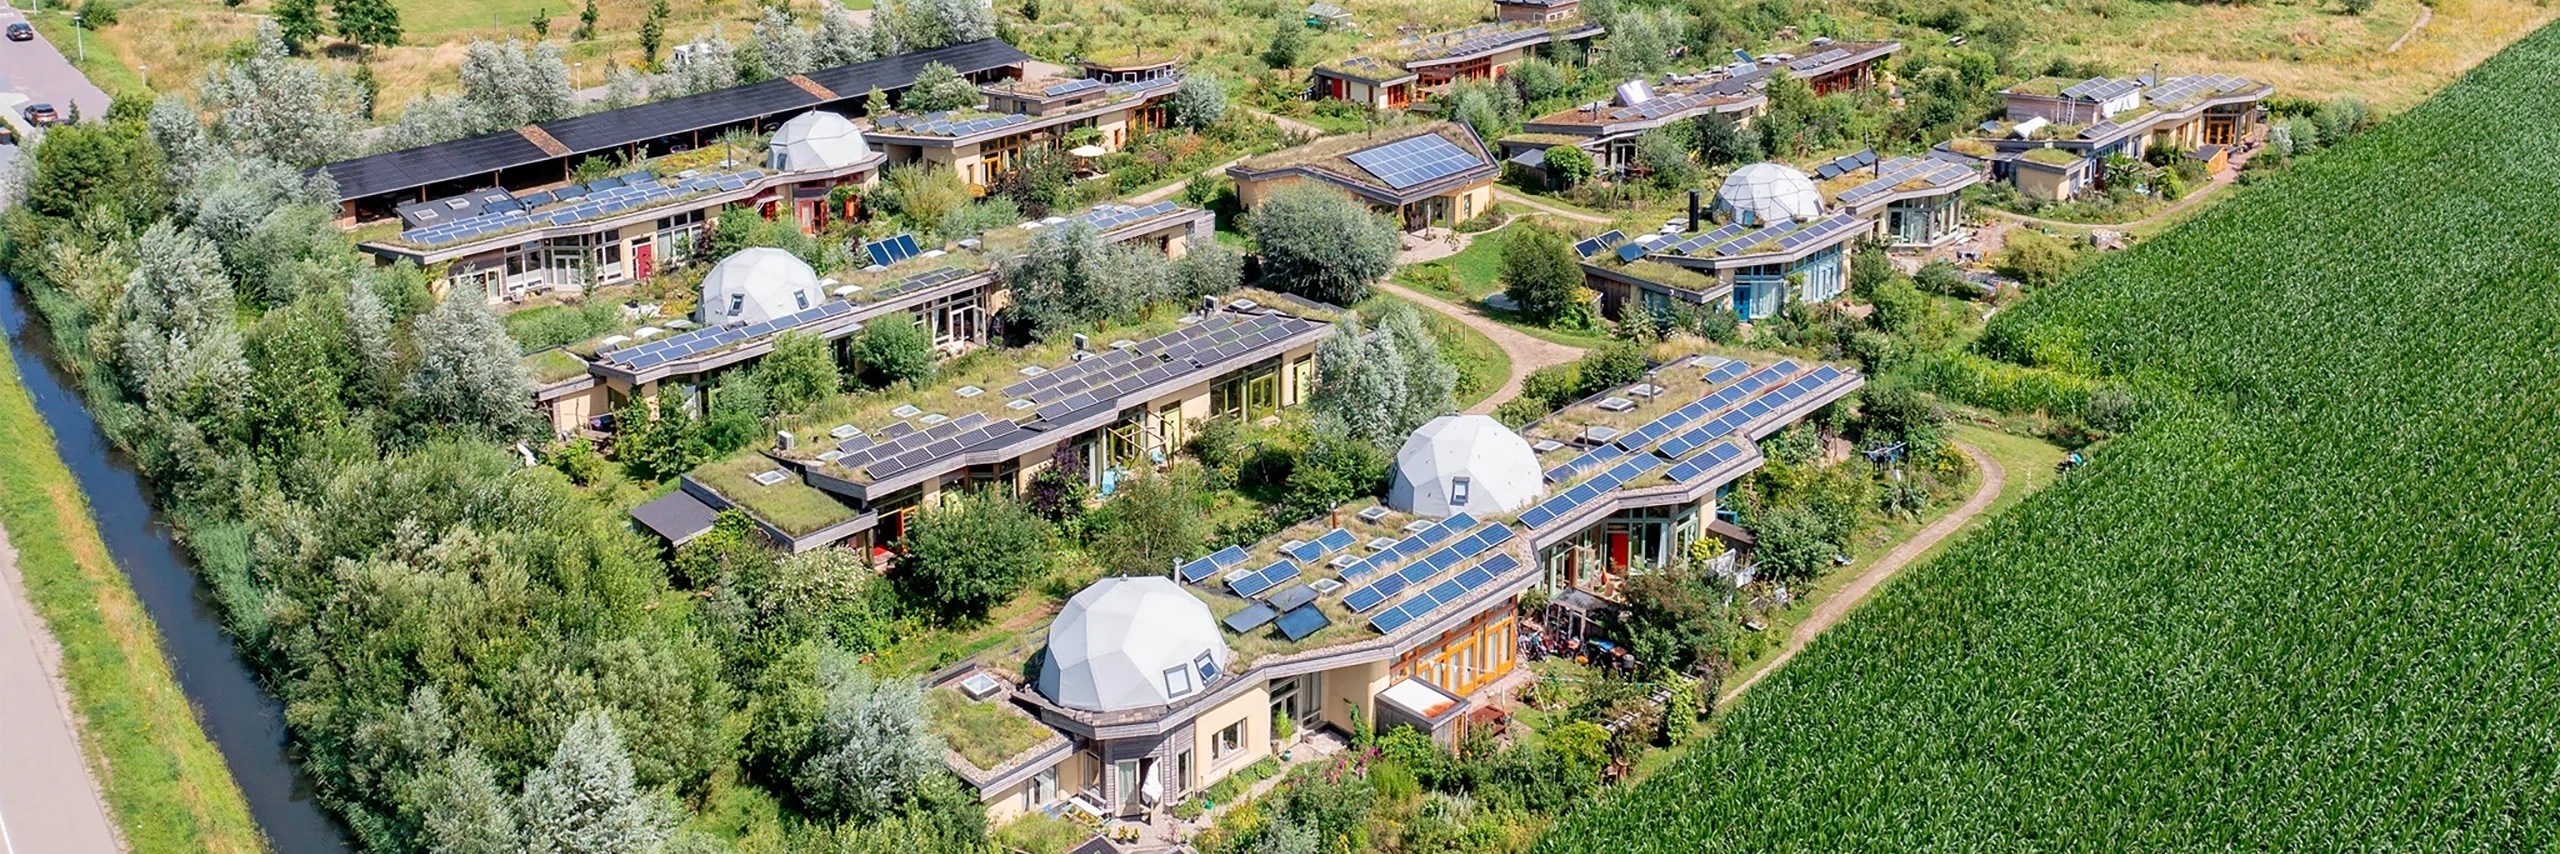 Loqio voorziet ecologische wijk in Olst van energiemonitoring